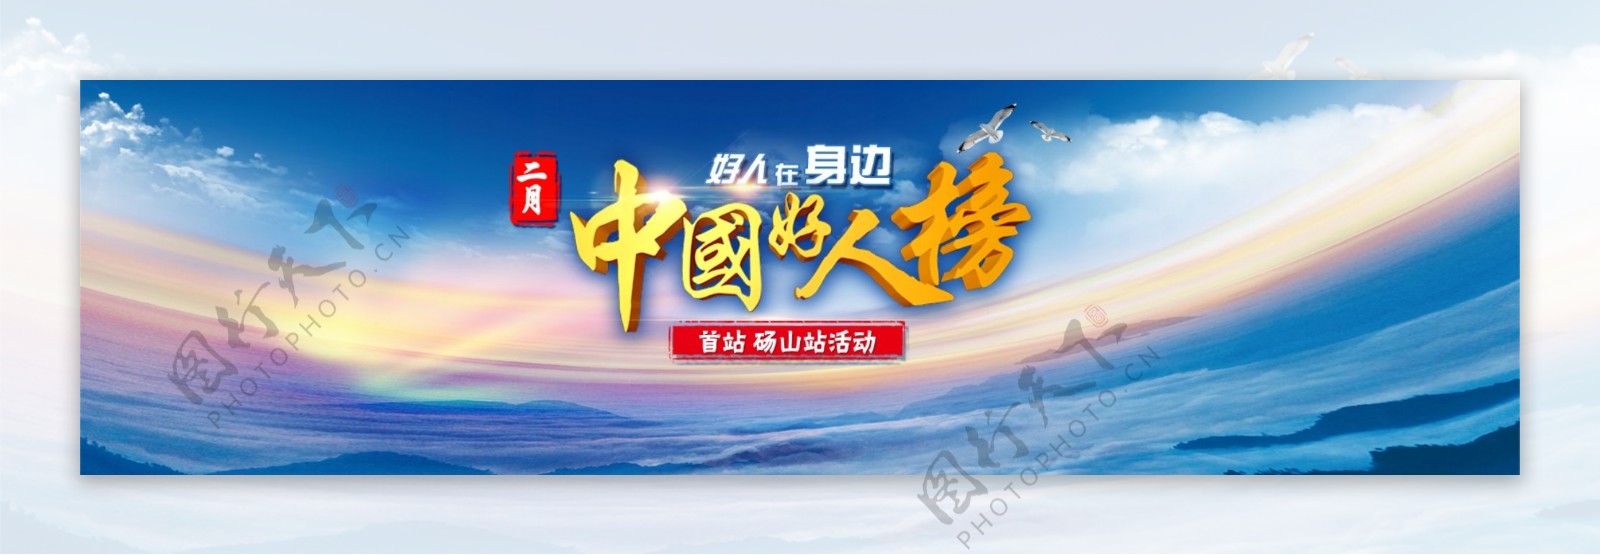 中国好人榜网页banner